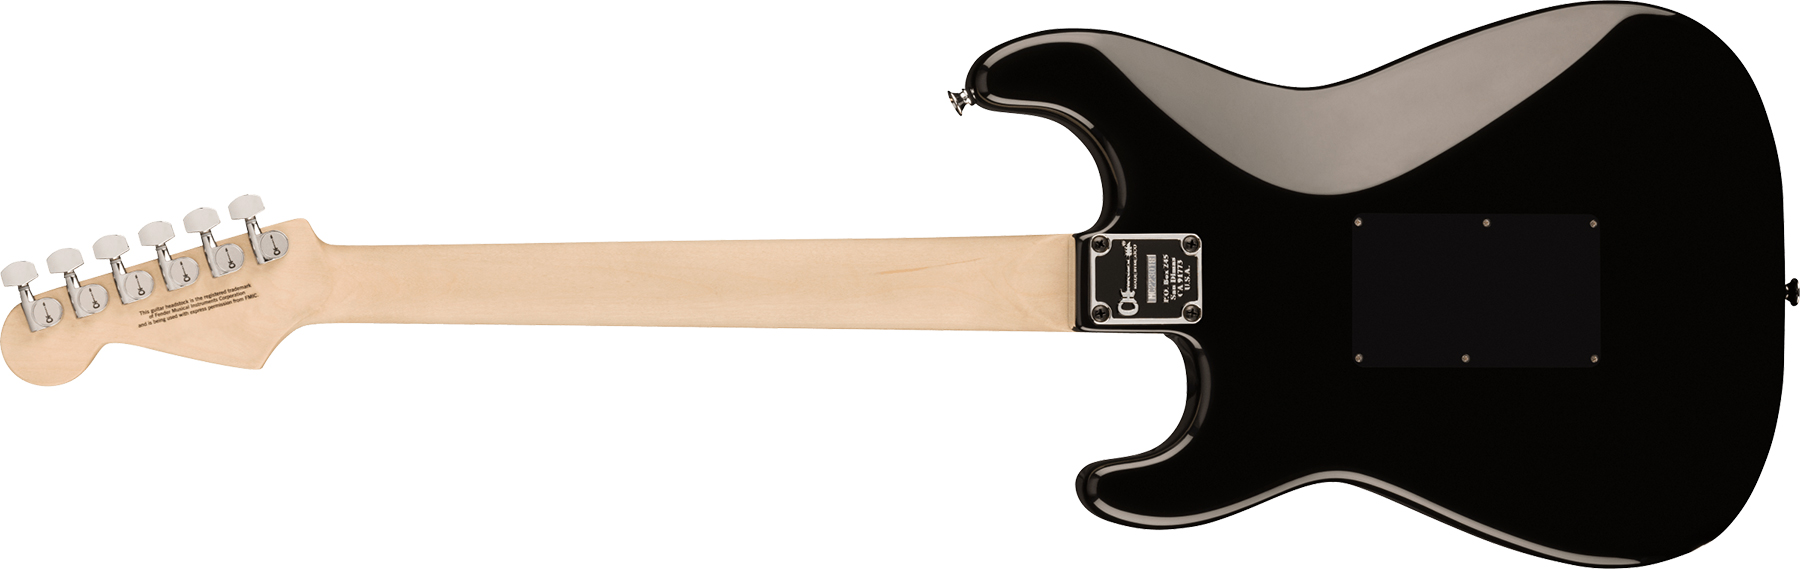 Charvel Pro-mod So-cal Style 1 Hh Fr M 2h Seymour Duncan Mn - Gloss Black - Guitare Électrique Forme Str - Variation 1